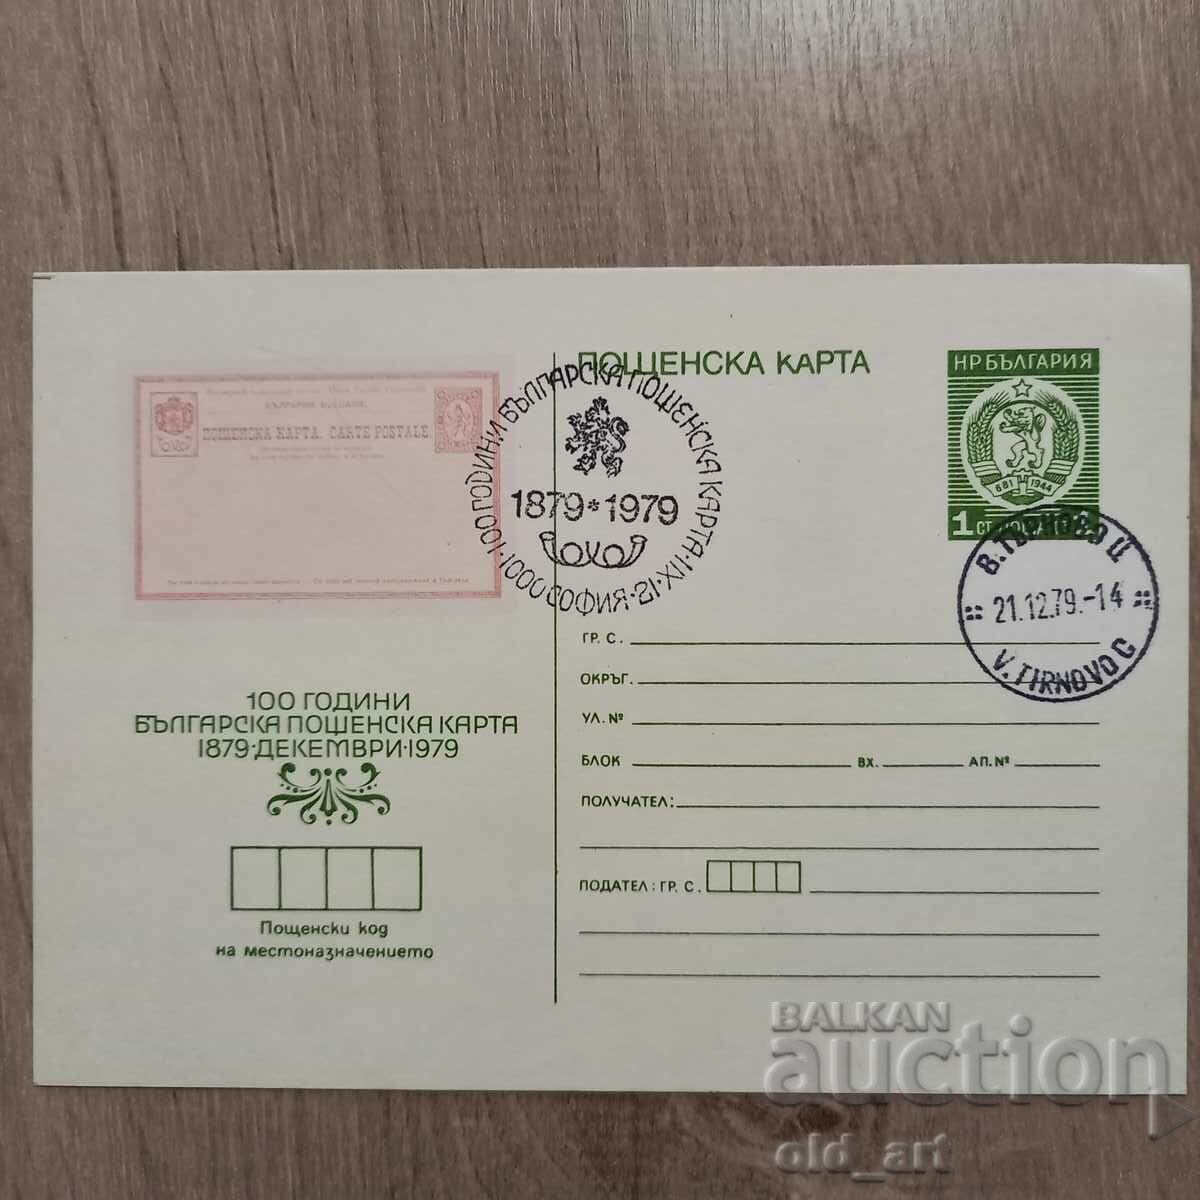 Пощенска карта - 100 г. българска пощенска карта